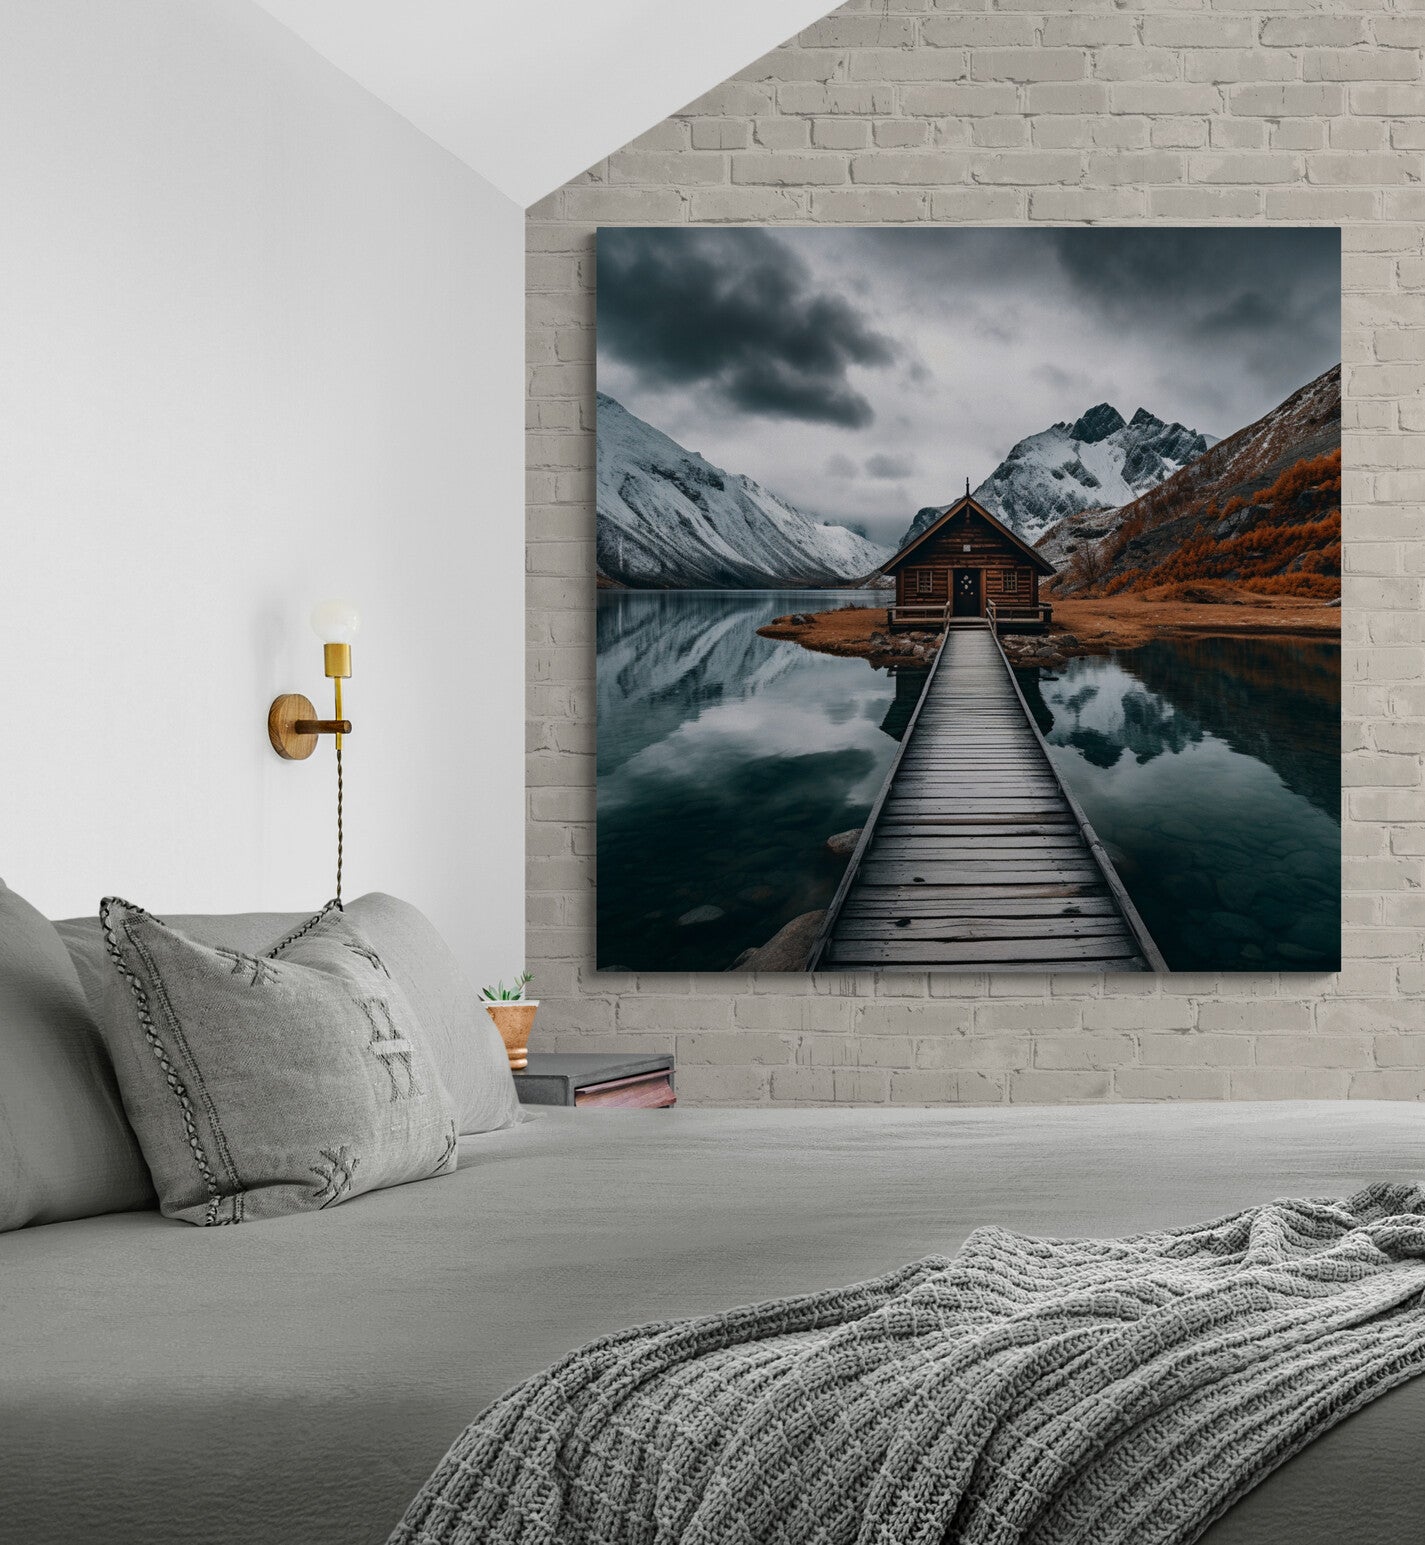 Le tableau prend vie dans une chambre minimaliste, où son reflet aquatique et les montagnes enneigées apportent une sérénité naturelle